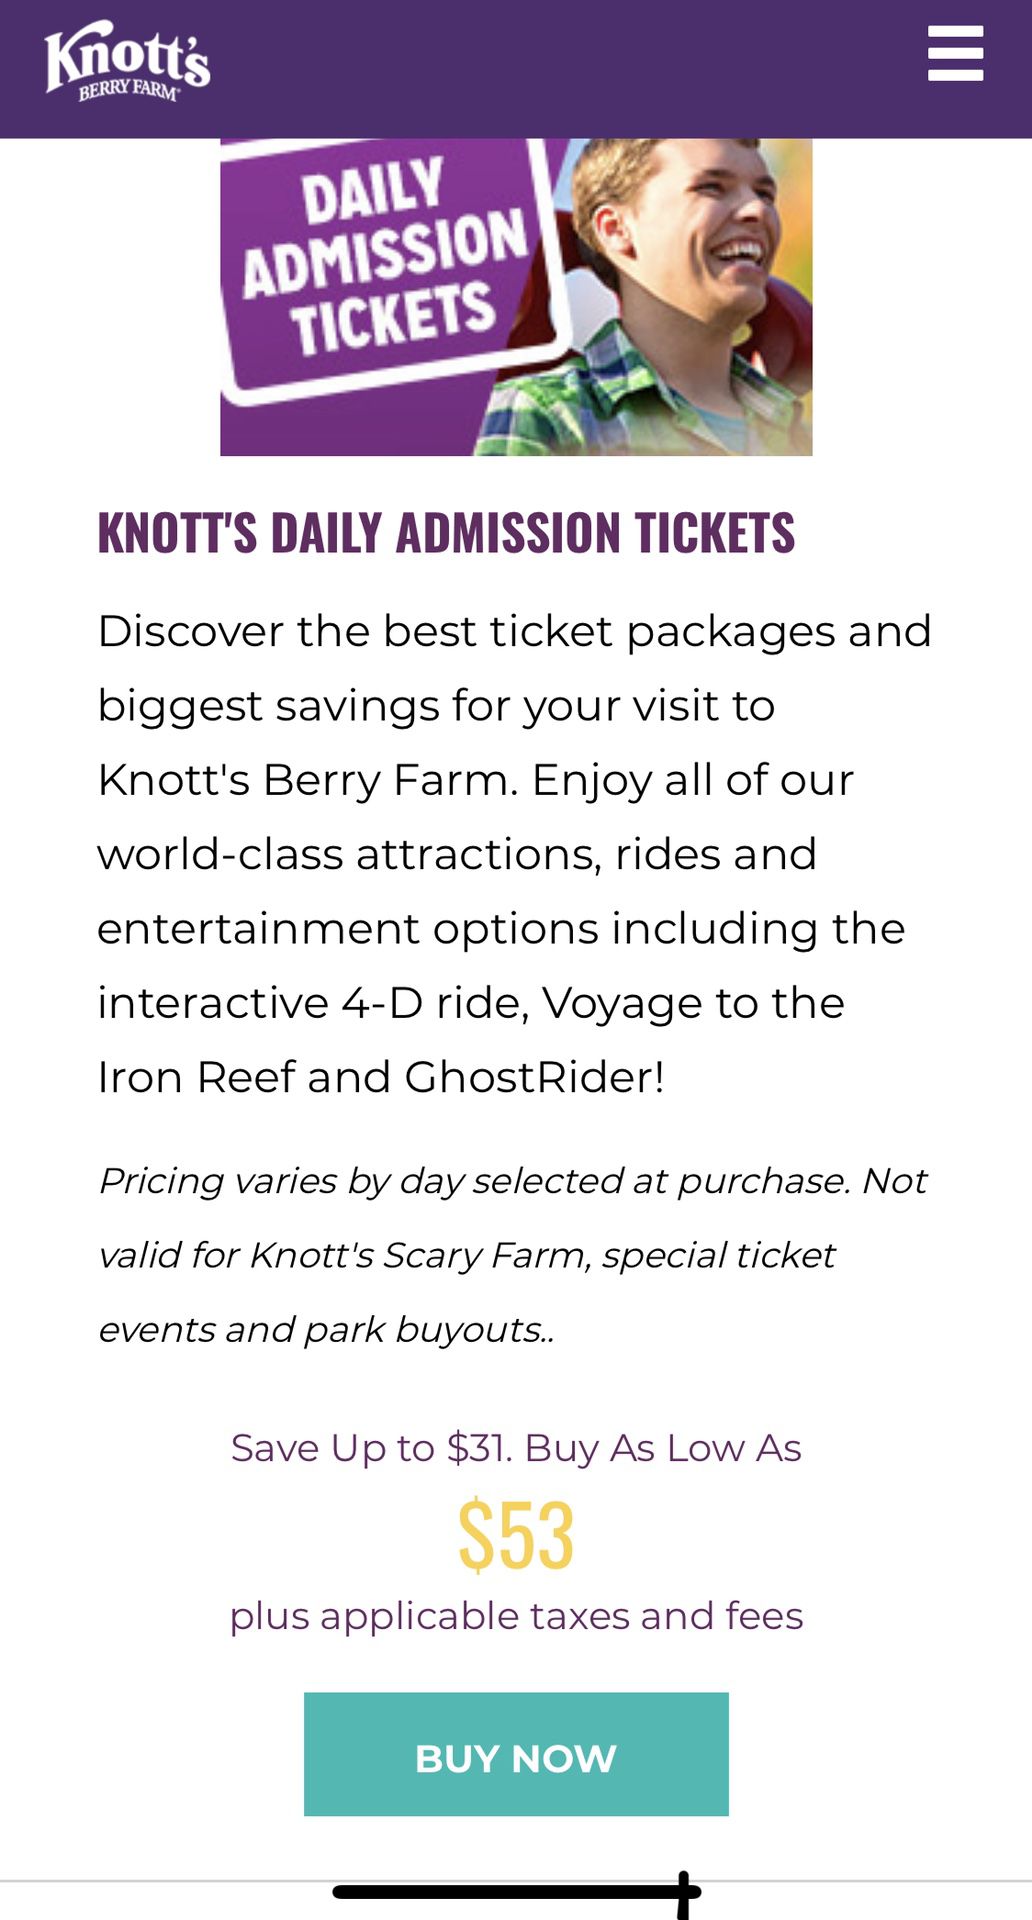 Knotts berry farm tickets $35